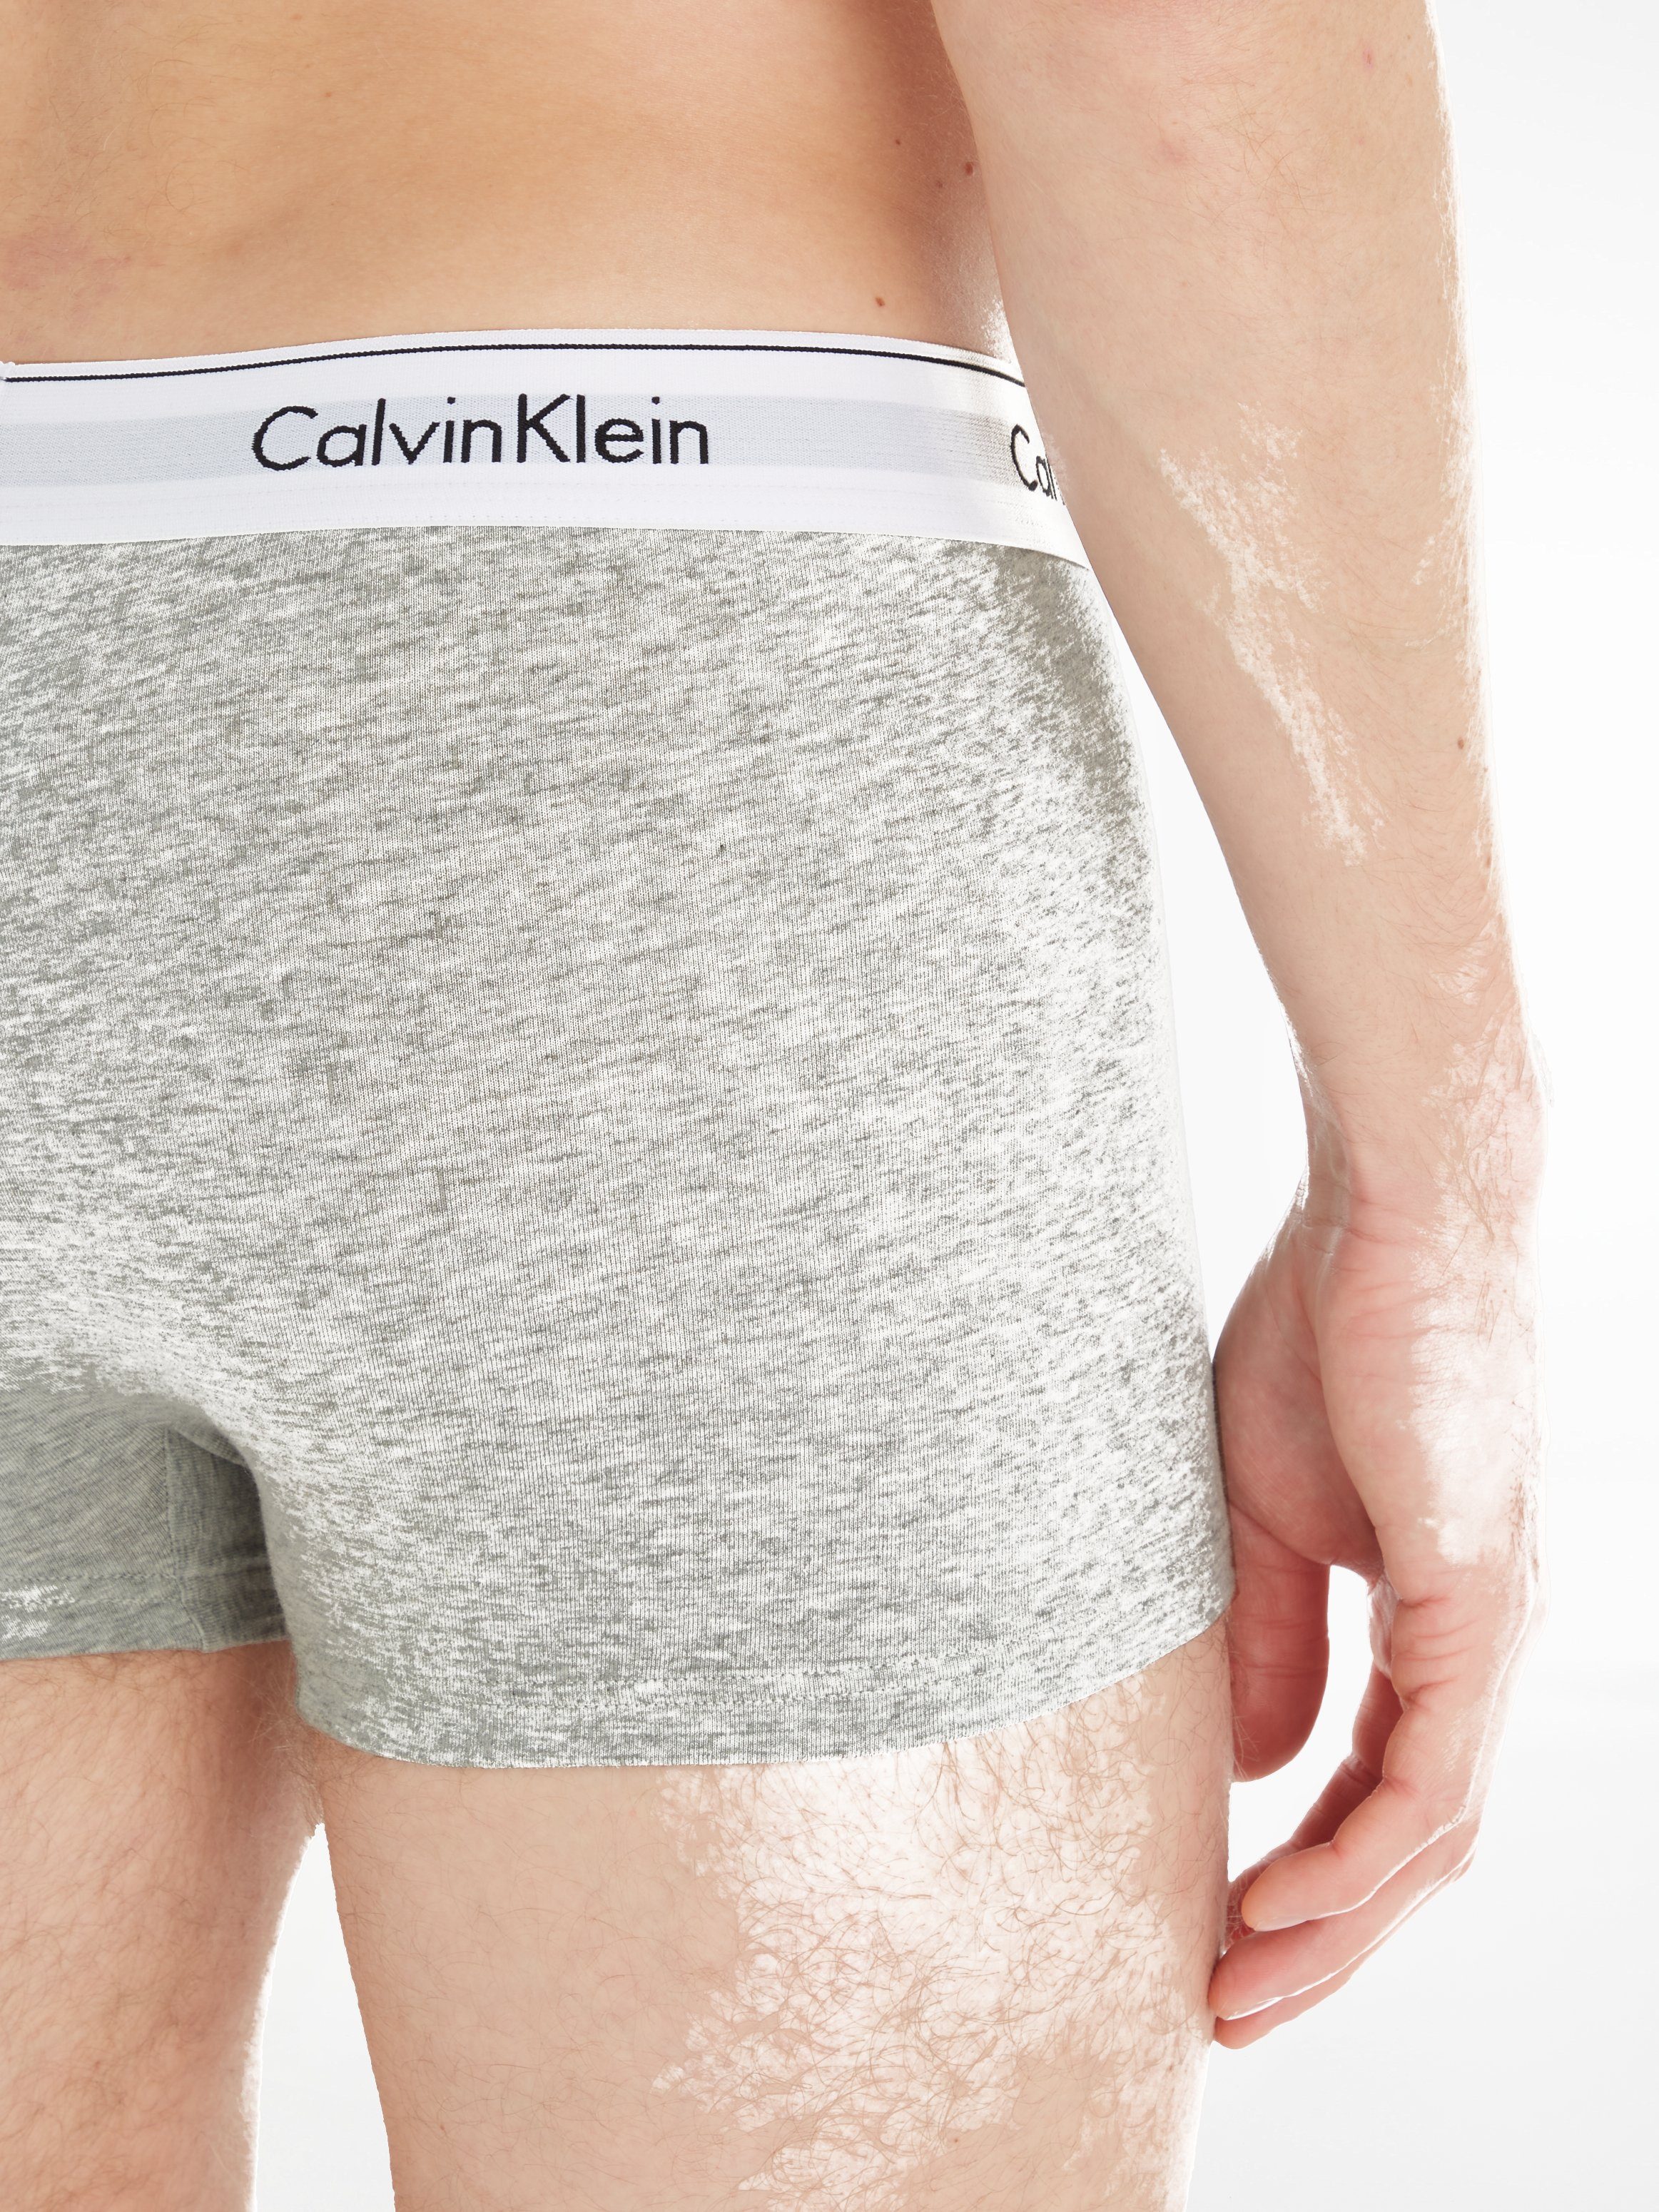 3-St., Logoschriftzug Klein Calvin 3er-Pack) am Underwear hellgrau-meliert, Wäschebund weiß, mit (Packung, Boxer schwarz